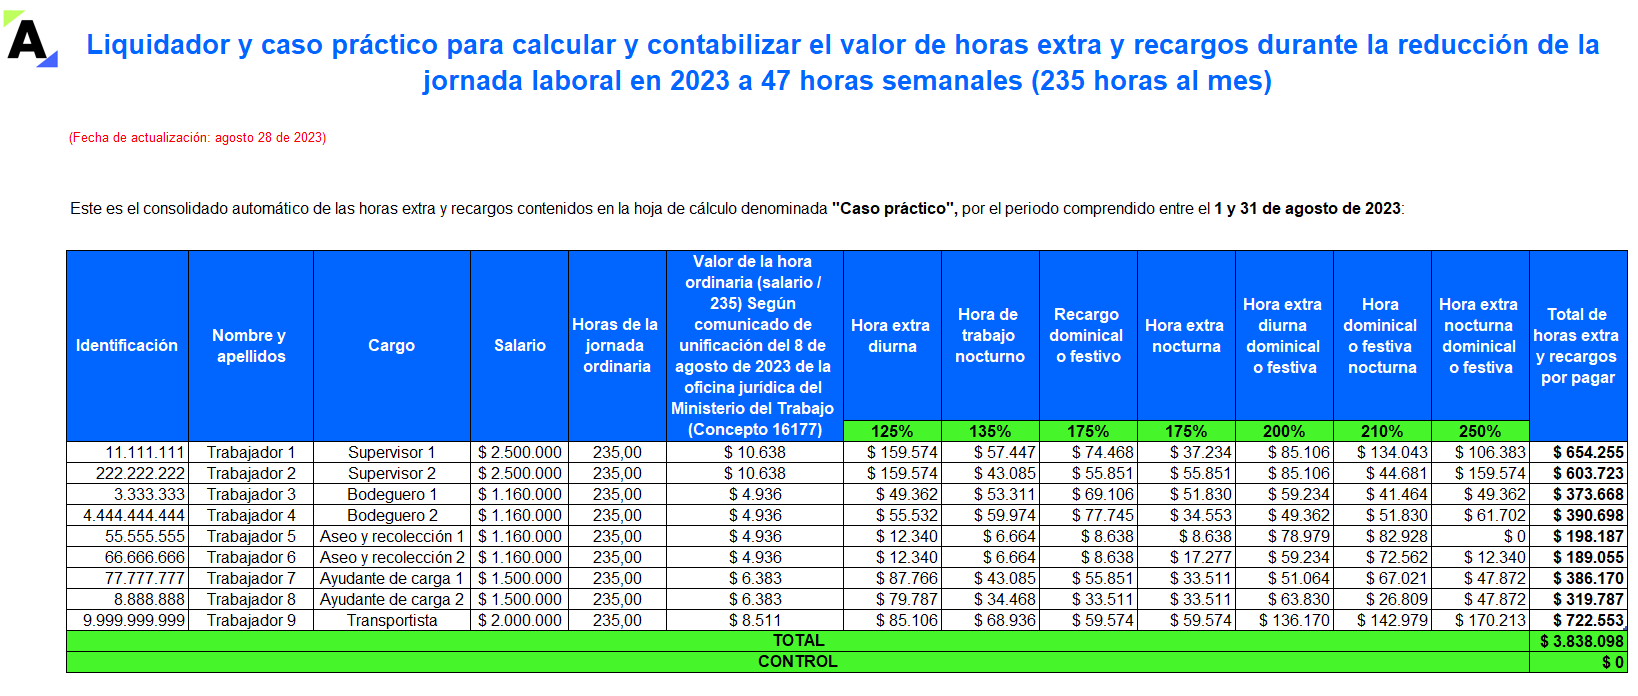 Liquidador y caso práctico para calcular y contabilizar horas extra y recargos durante la reducción de la jornada laboral en 2023